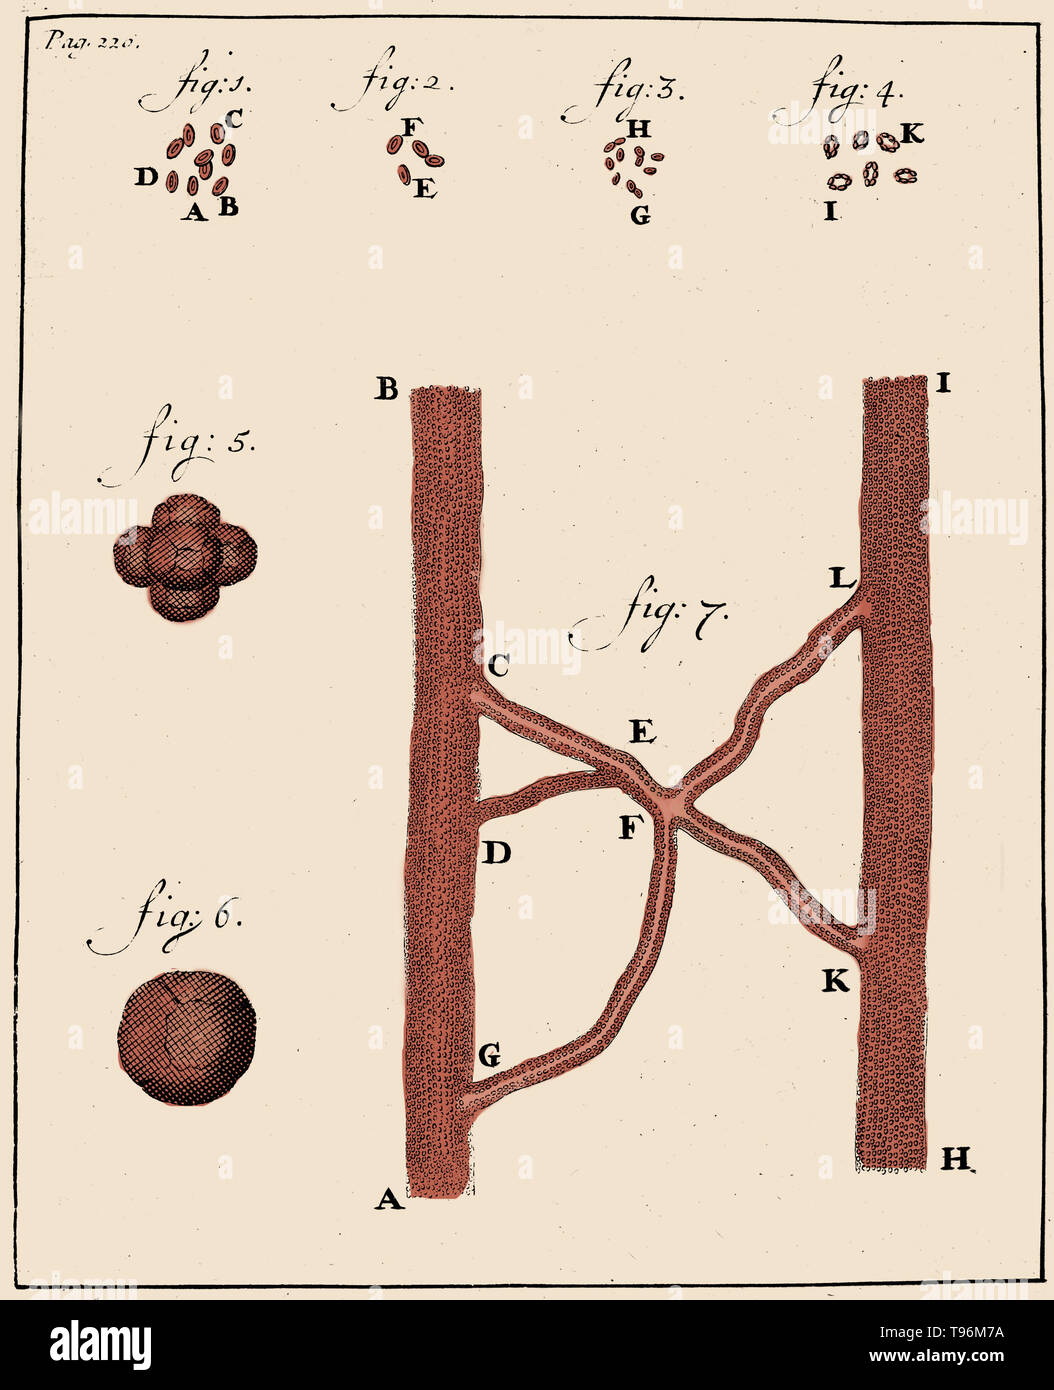 I corpuscoli sanguigni, Anthony van Leeuwenhoek, 1719. Silografia che mostra gli spermatozoi di coniglio (figg. 1-4) e cane (figg. 5-8), osservate e disegnata da Anthony van Leeuwenhoek, 1677. Leeuwenhoek (1632-1723) era un scienziato olandese, ora considerato il primo microbiologo. Egli è meglio conosciuto per il suo lavoro sul miglioramento del microscopio e per i suoi contributi verso lo stabilimento di microbiologia. Foto Stock